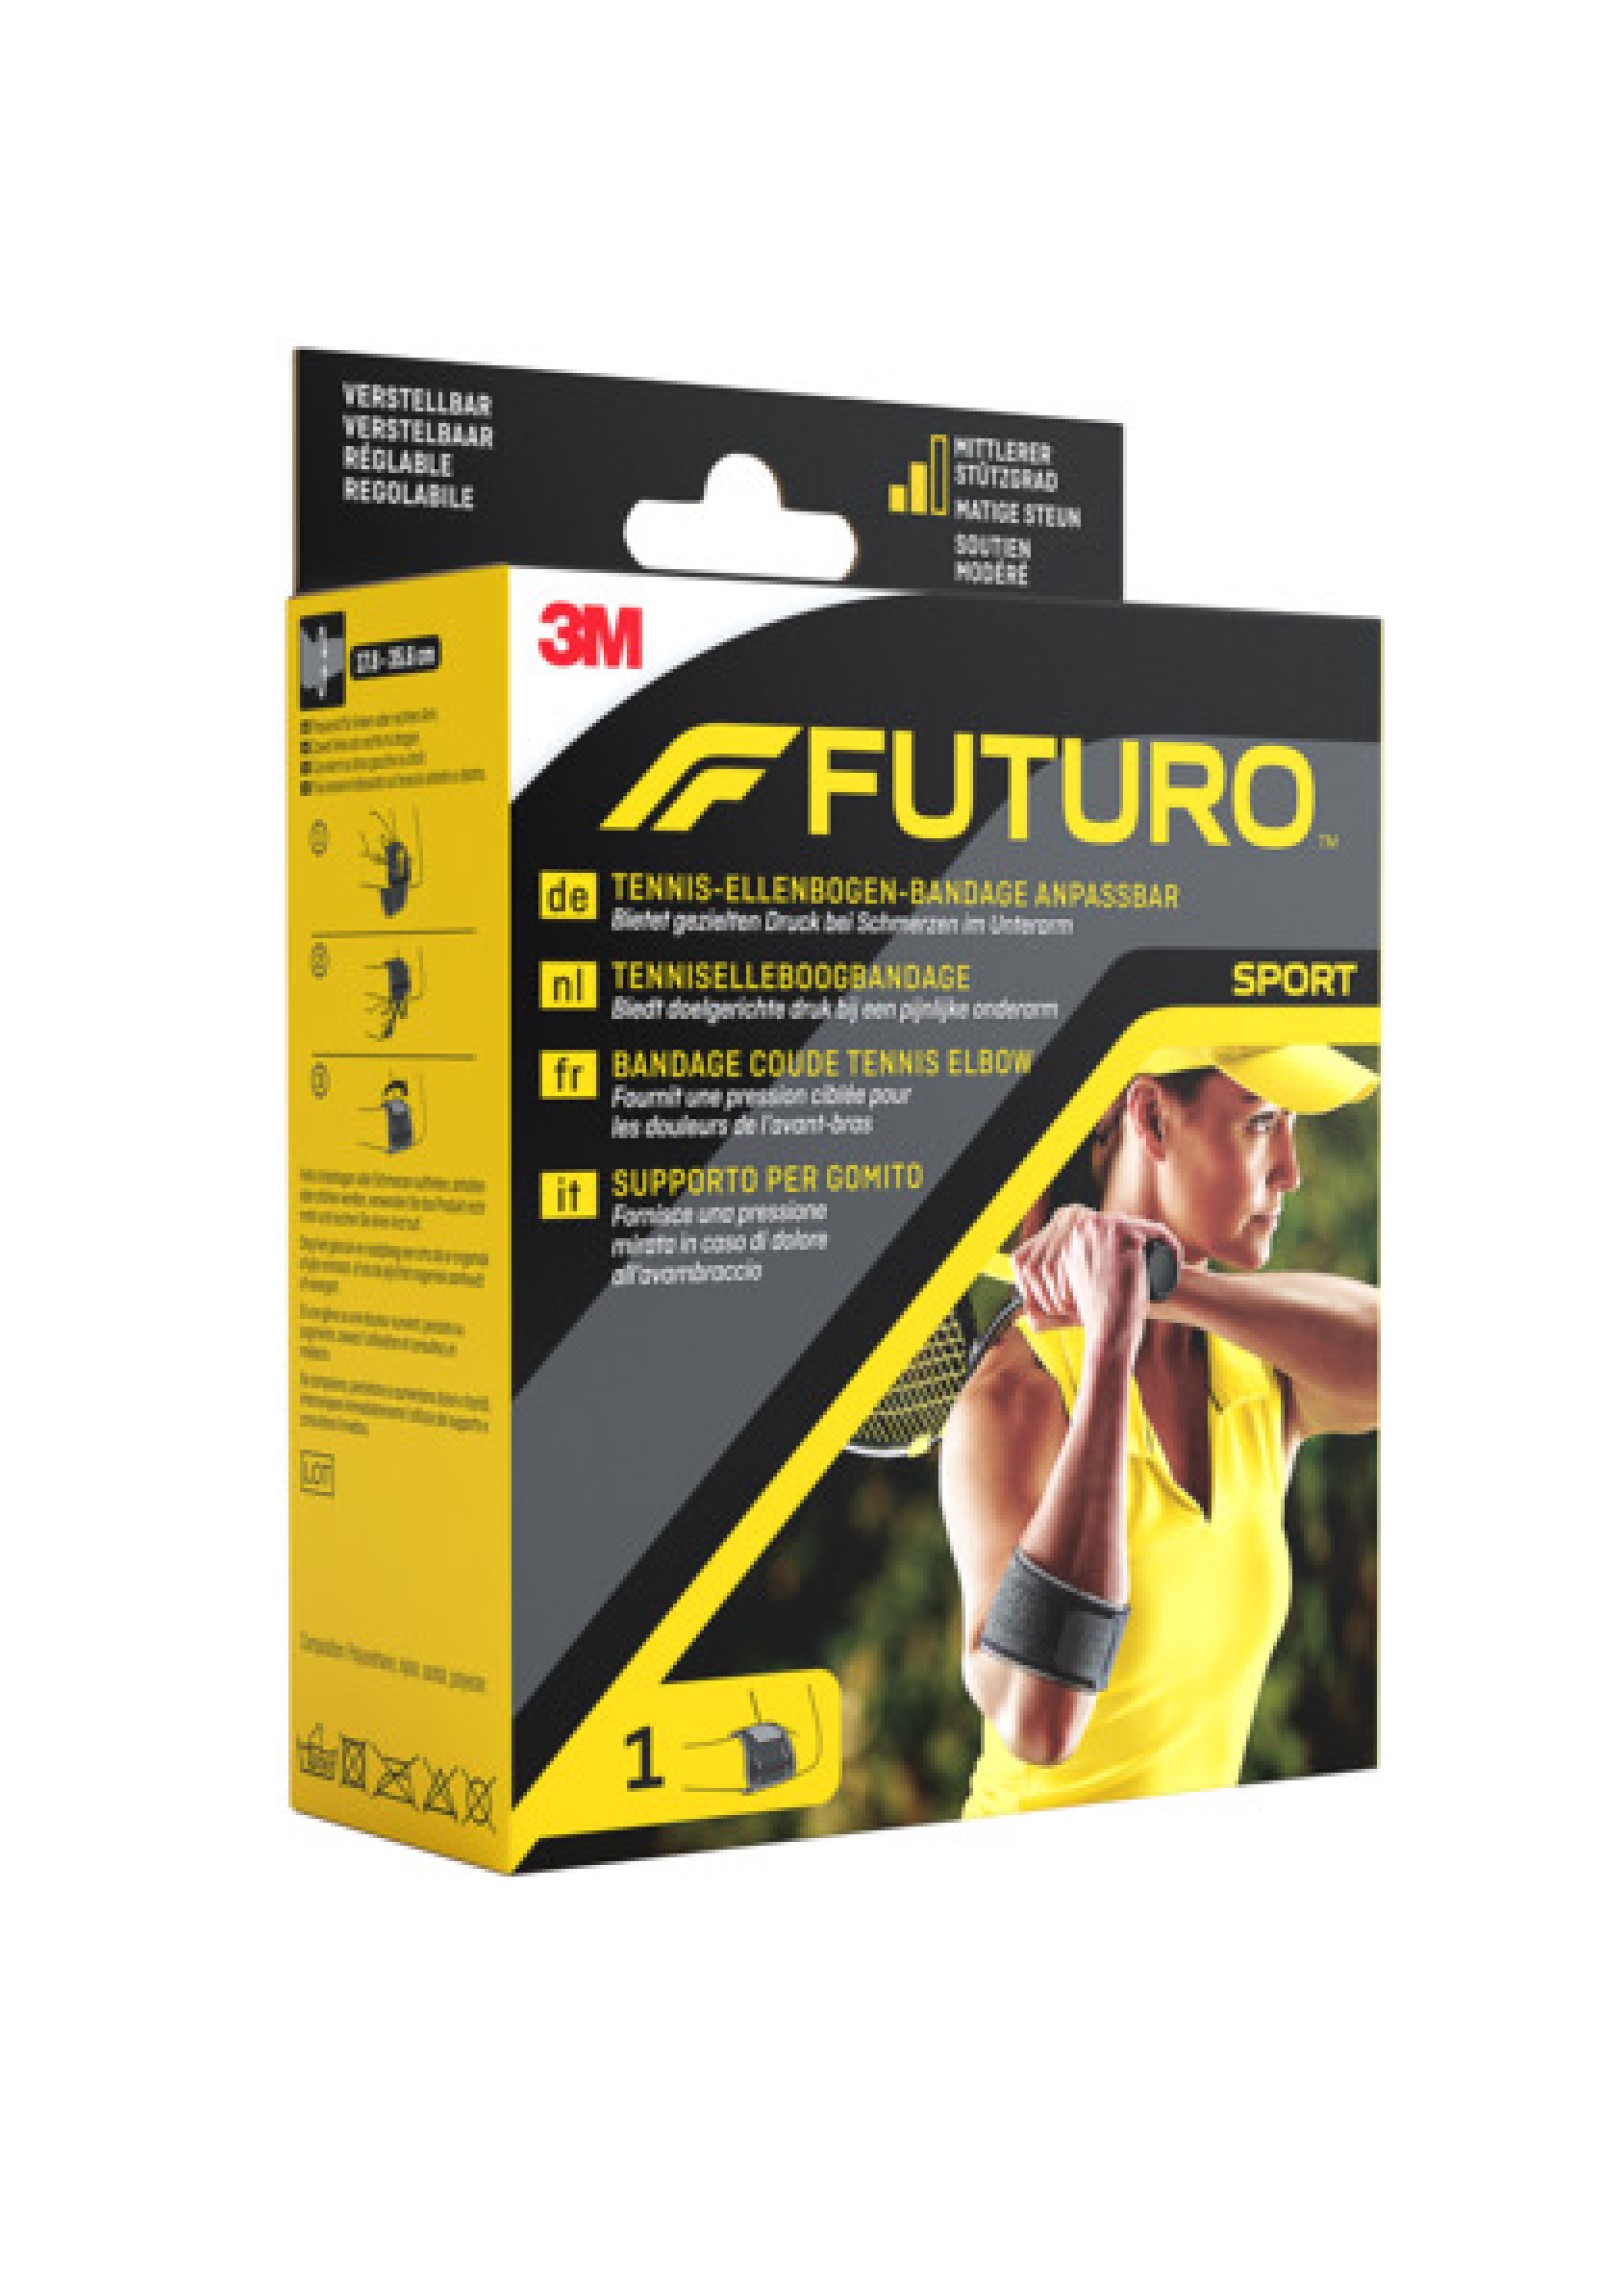 FUTURO™ Tennis-Ellenbogen-Bandage anpassbar 45975, Verstellbar SPORT (17.8 - 35.6 cm)